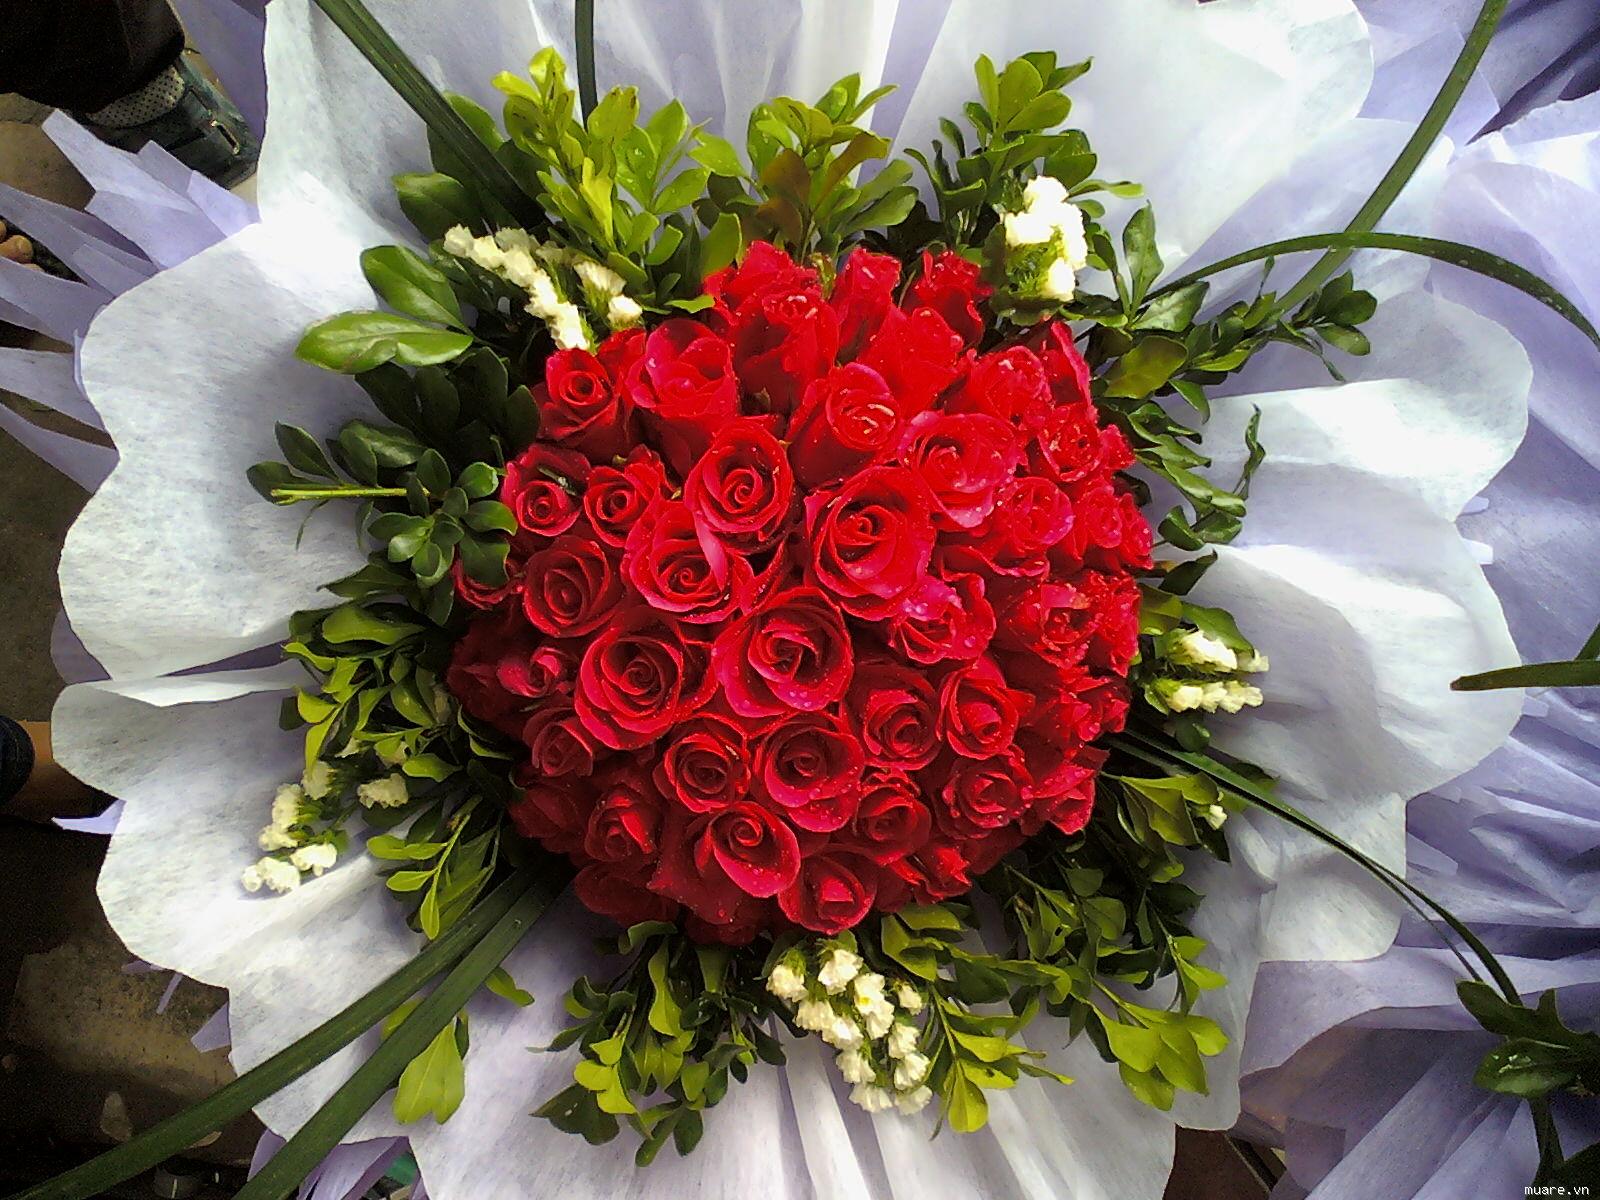 Bó hoa hồng trái tim: Bạn muốn tặng một món quà đầy tình yêu cho người mình thương? Hãy cùng xem những bó hoa hồng trái tim đầy ý nghĩa. Mỗi cánh hoa đều được sắp xếp một cách tinh tế, tạo nên sự độc đáo và độc lạ. Tự tay làm một bó hoa tặng người thương, không còn là khó khăn với chúng tôi.